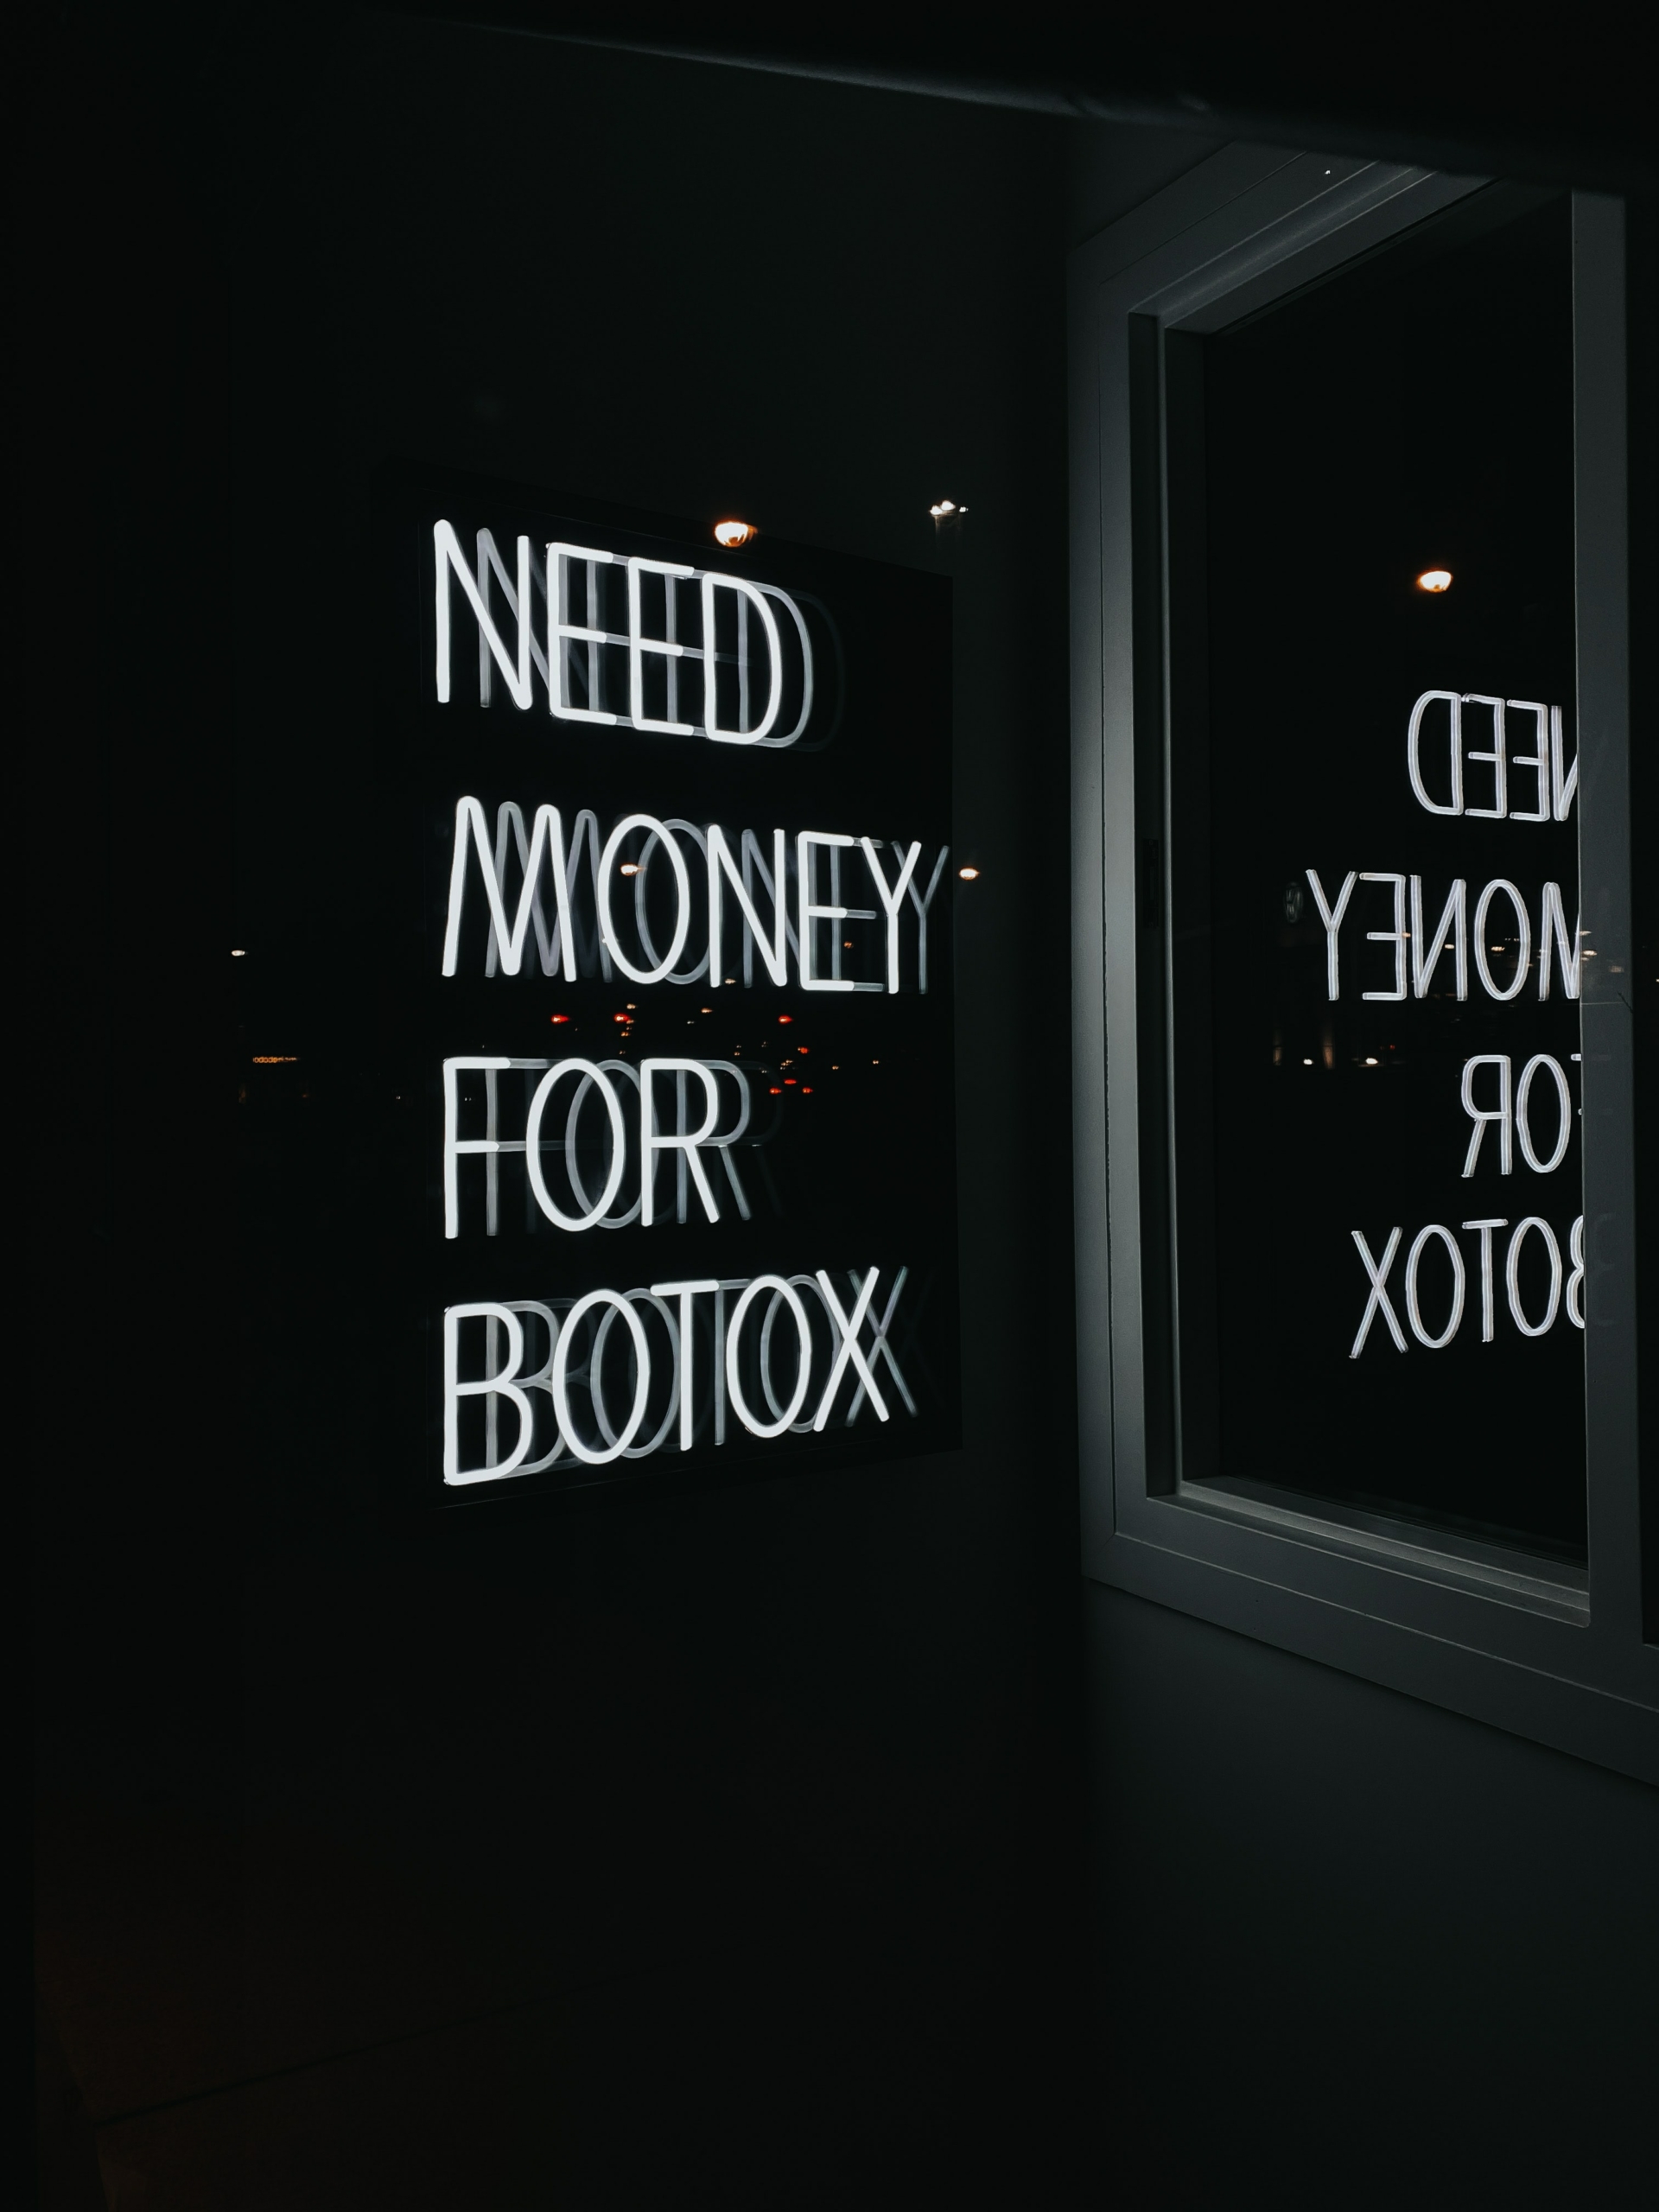 Leuchtschrift mit der Aufschrift: "Need money for Botox", spiegelt sich im Schaufenster